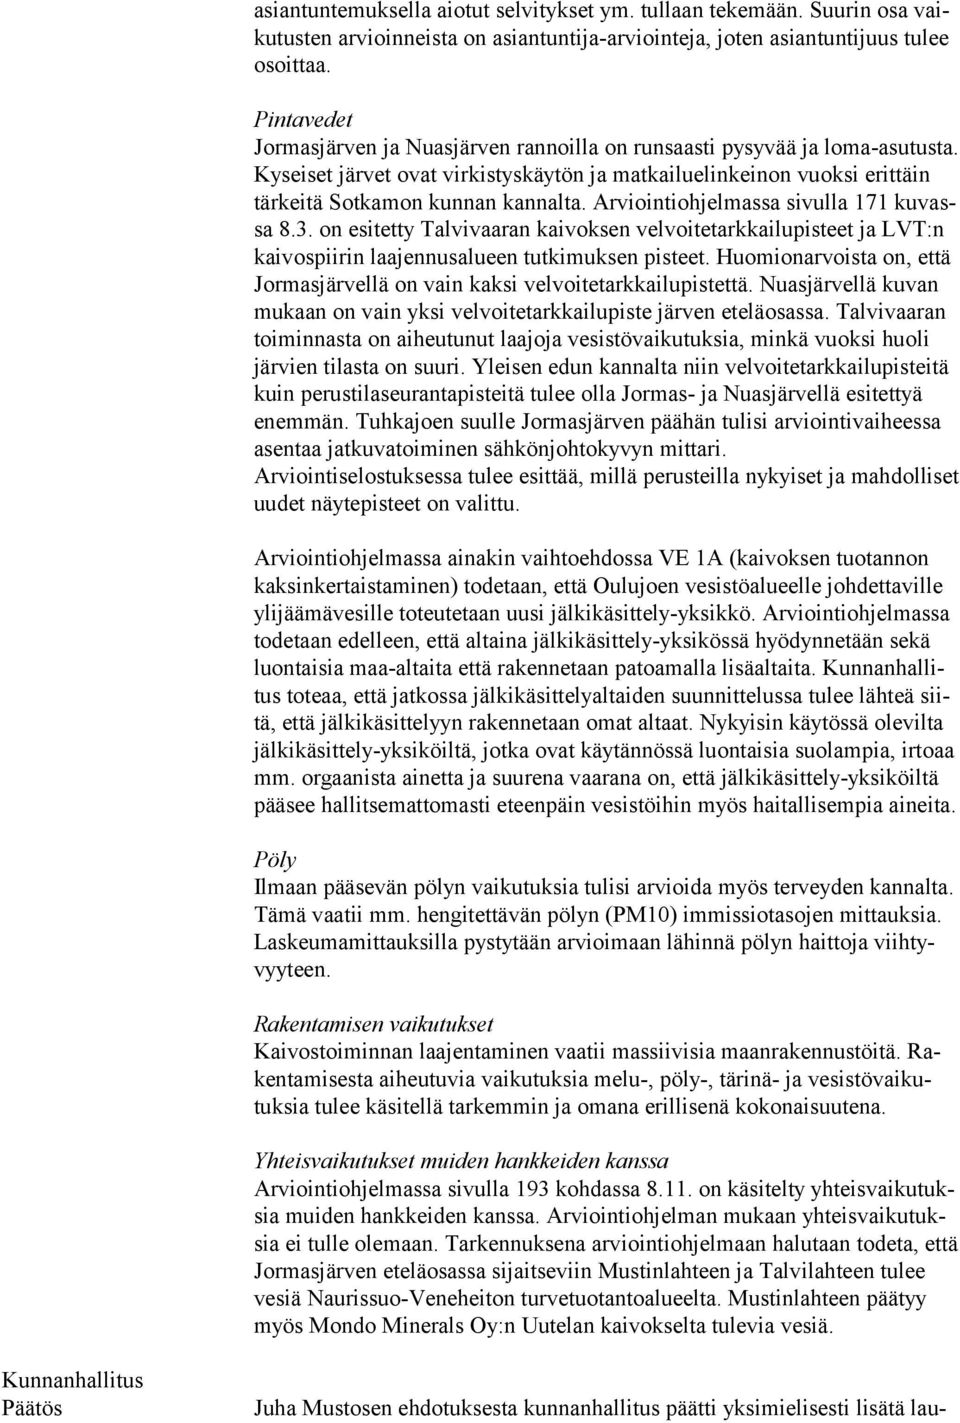 Arviointiohjelmassa sivulla 171 kuvassa 8.3. on esitetty Talvivaaran kaivoksen velvoitetarkkailupisteet ja LVT:n kaivos piirin laajennusalueen tutkimuksen pisteet.